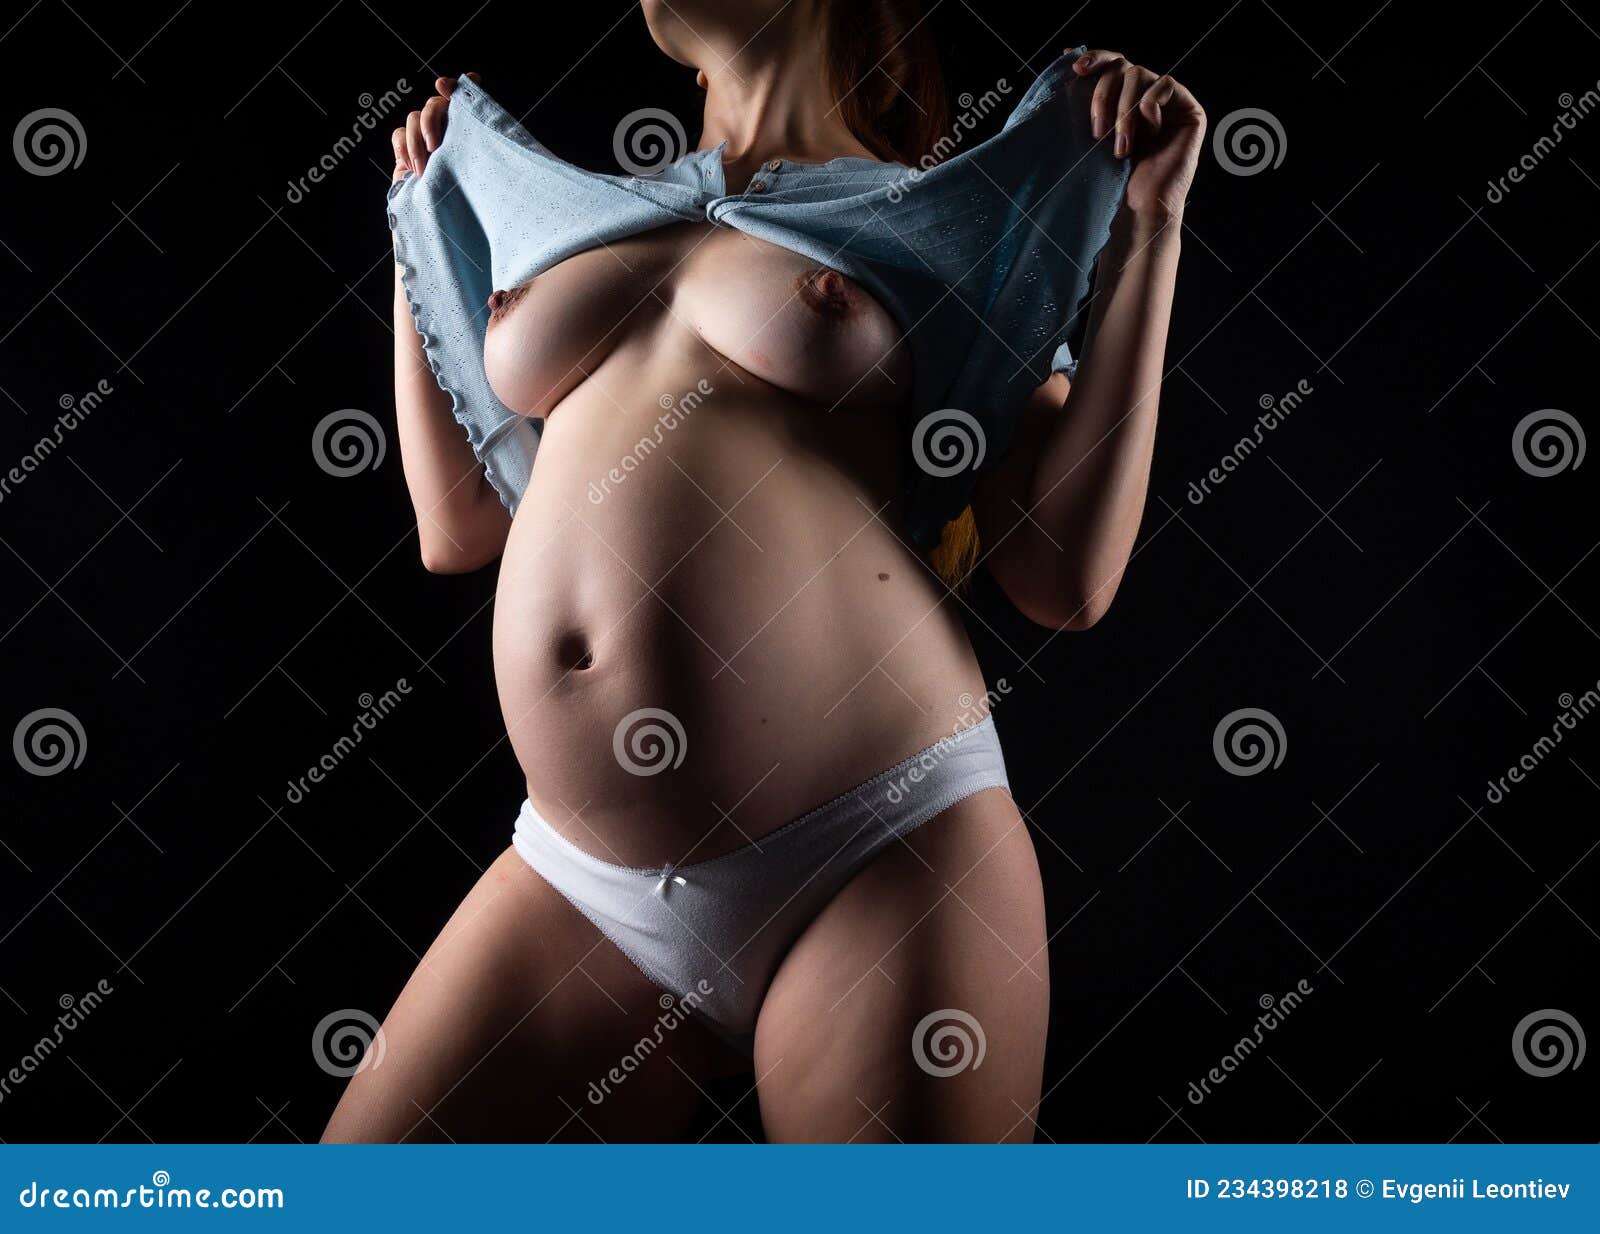 фигура беременной голые фото 34